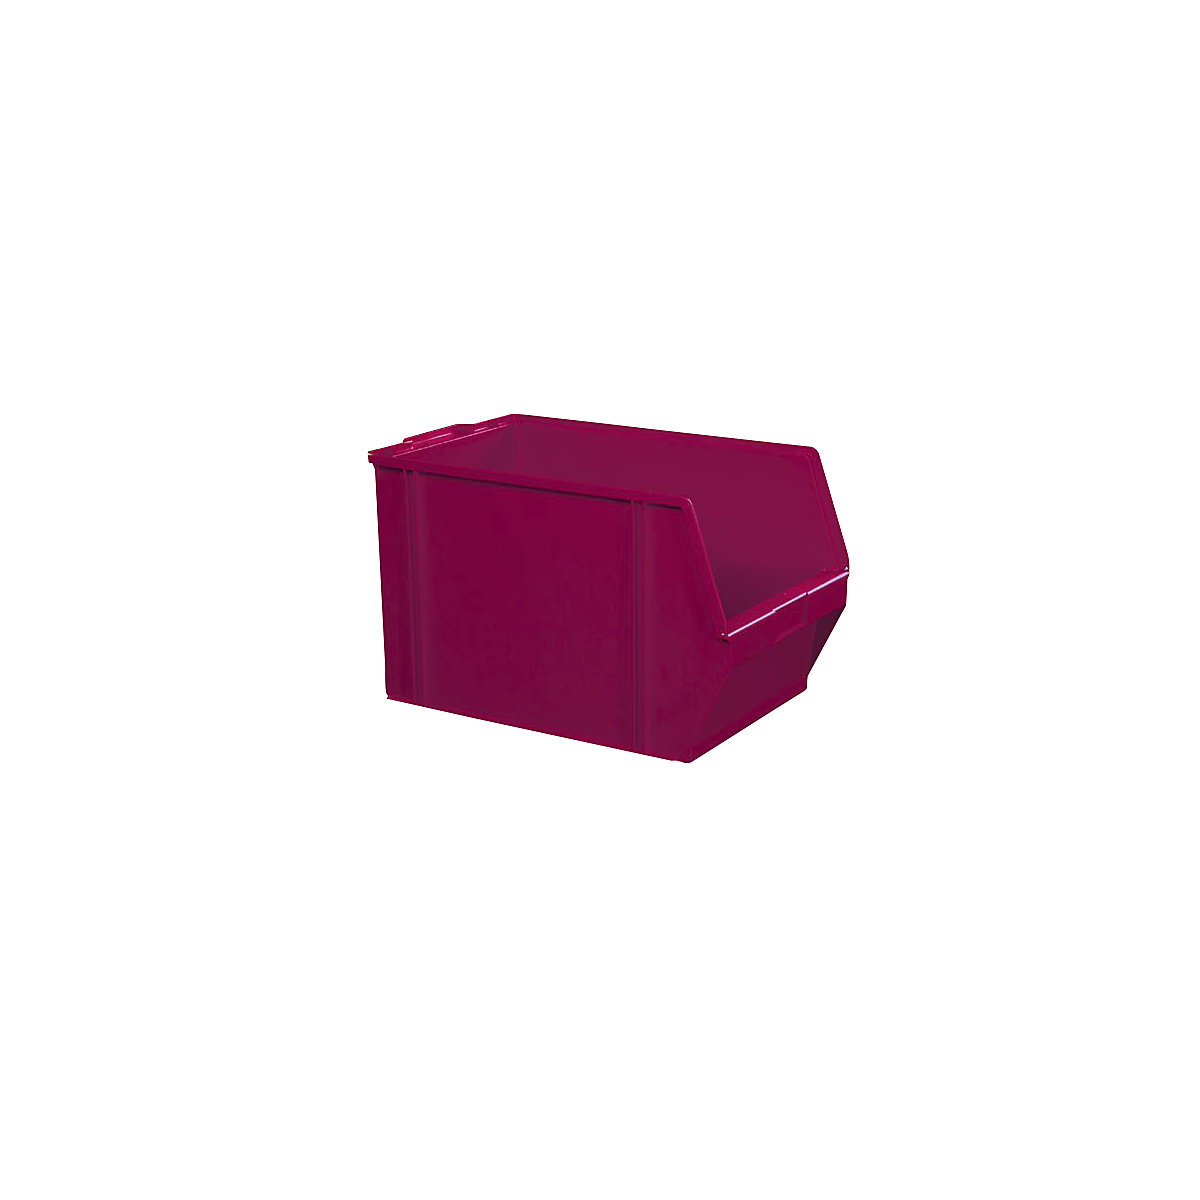 Sichtlagerkasten aus Polystyrol, Länge 500 mm, BxH 309 x 300 mm, VE 2 Stk, rot-10